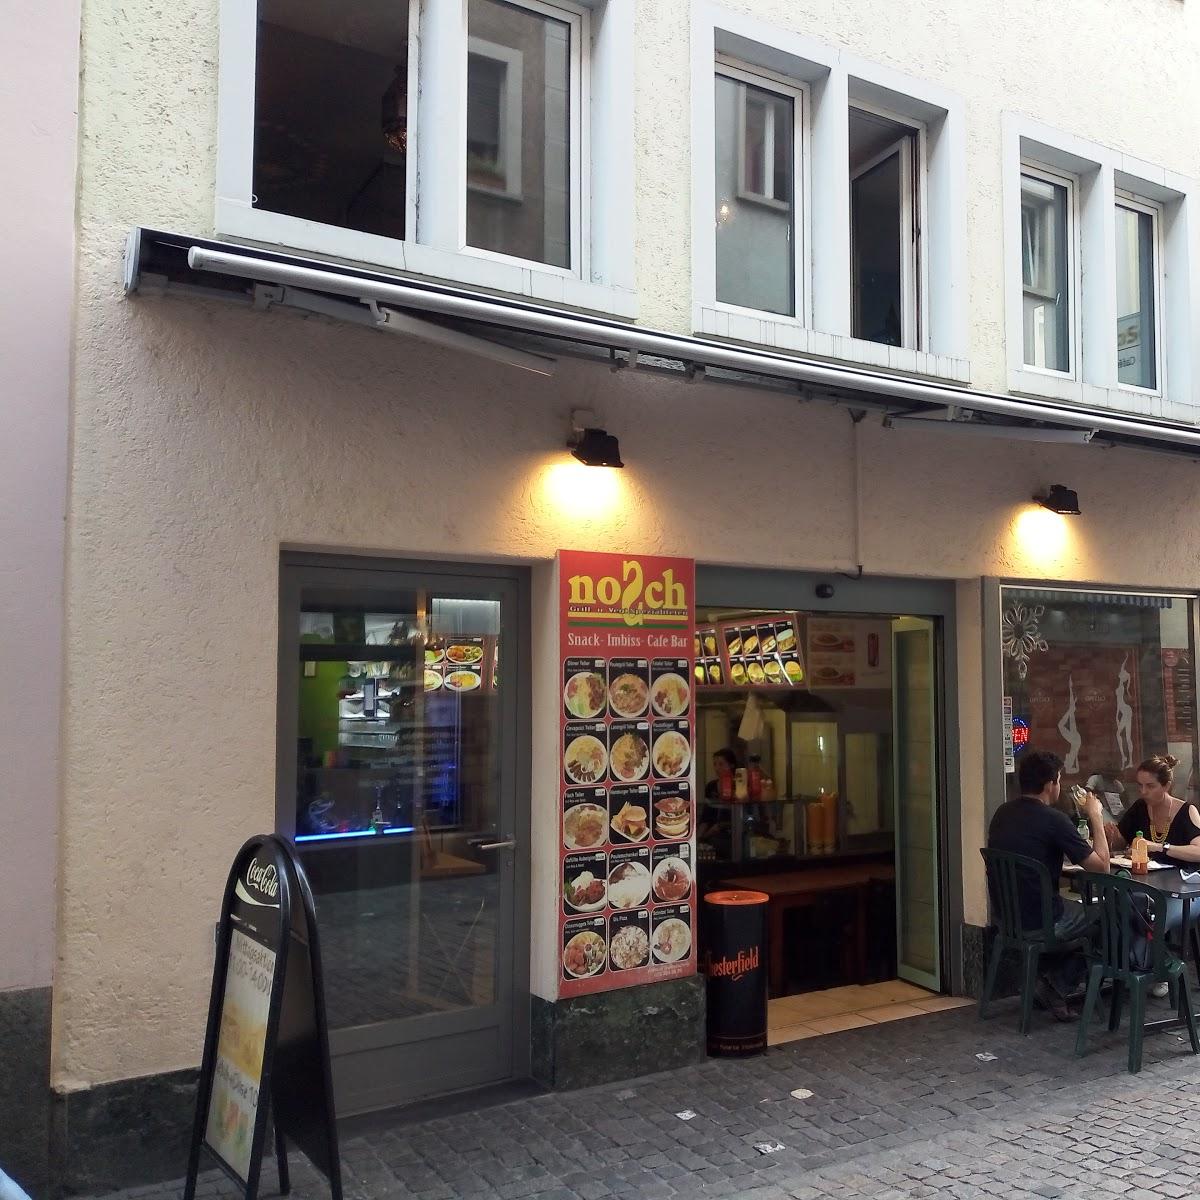 Restaurant "Nosch" in Zürich